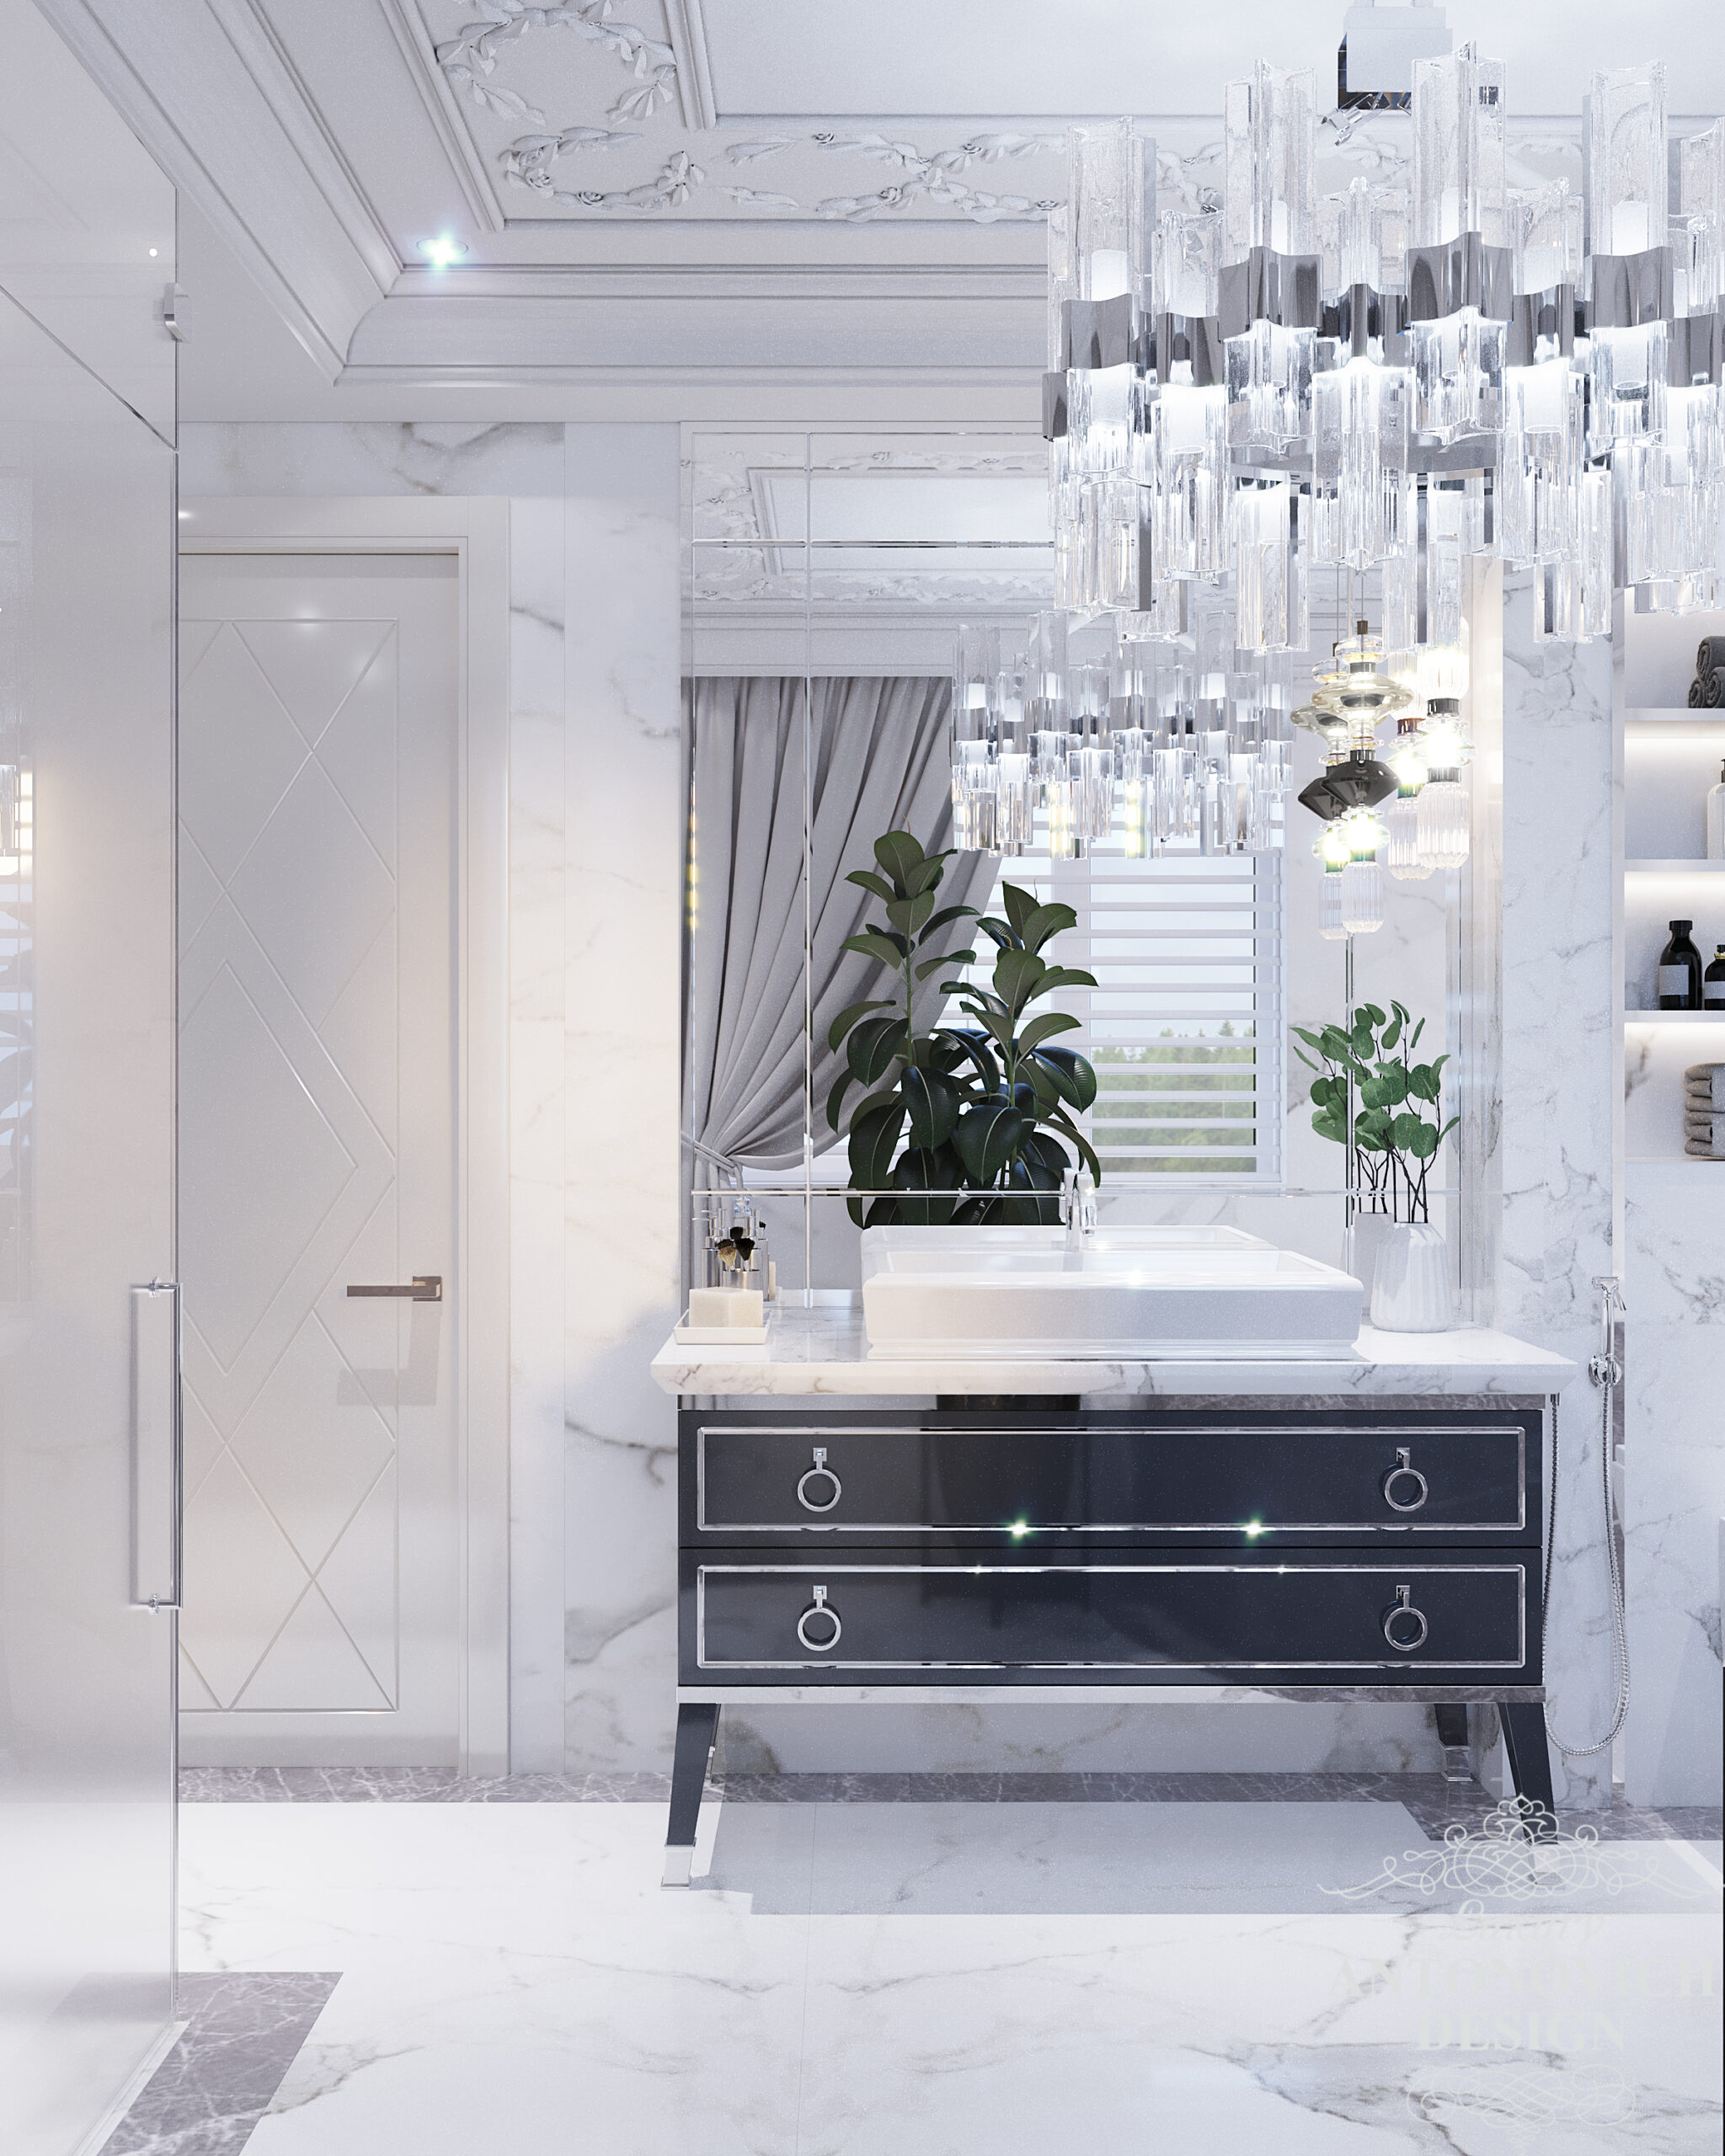 Дизайн ванной комнаты в белых и графитовых оттенках, мрамор Calacatta, коллекция Oasis Italy, хрустальная люстра с хромированным напылением.